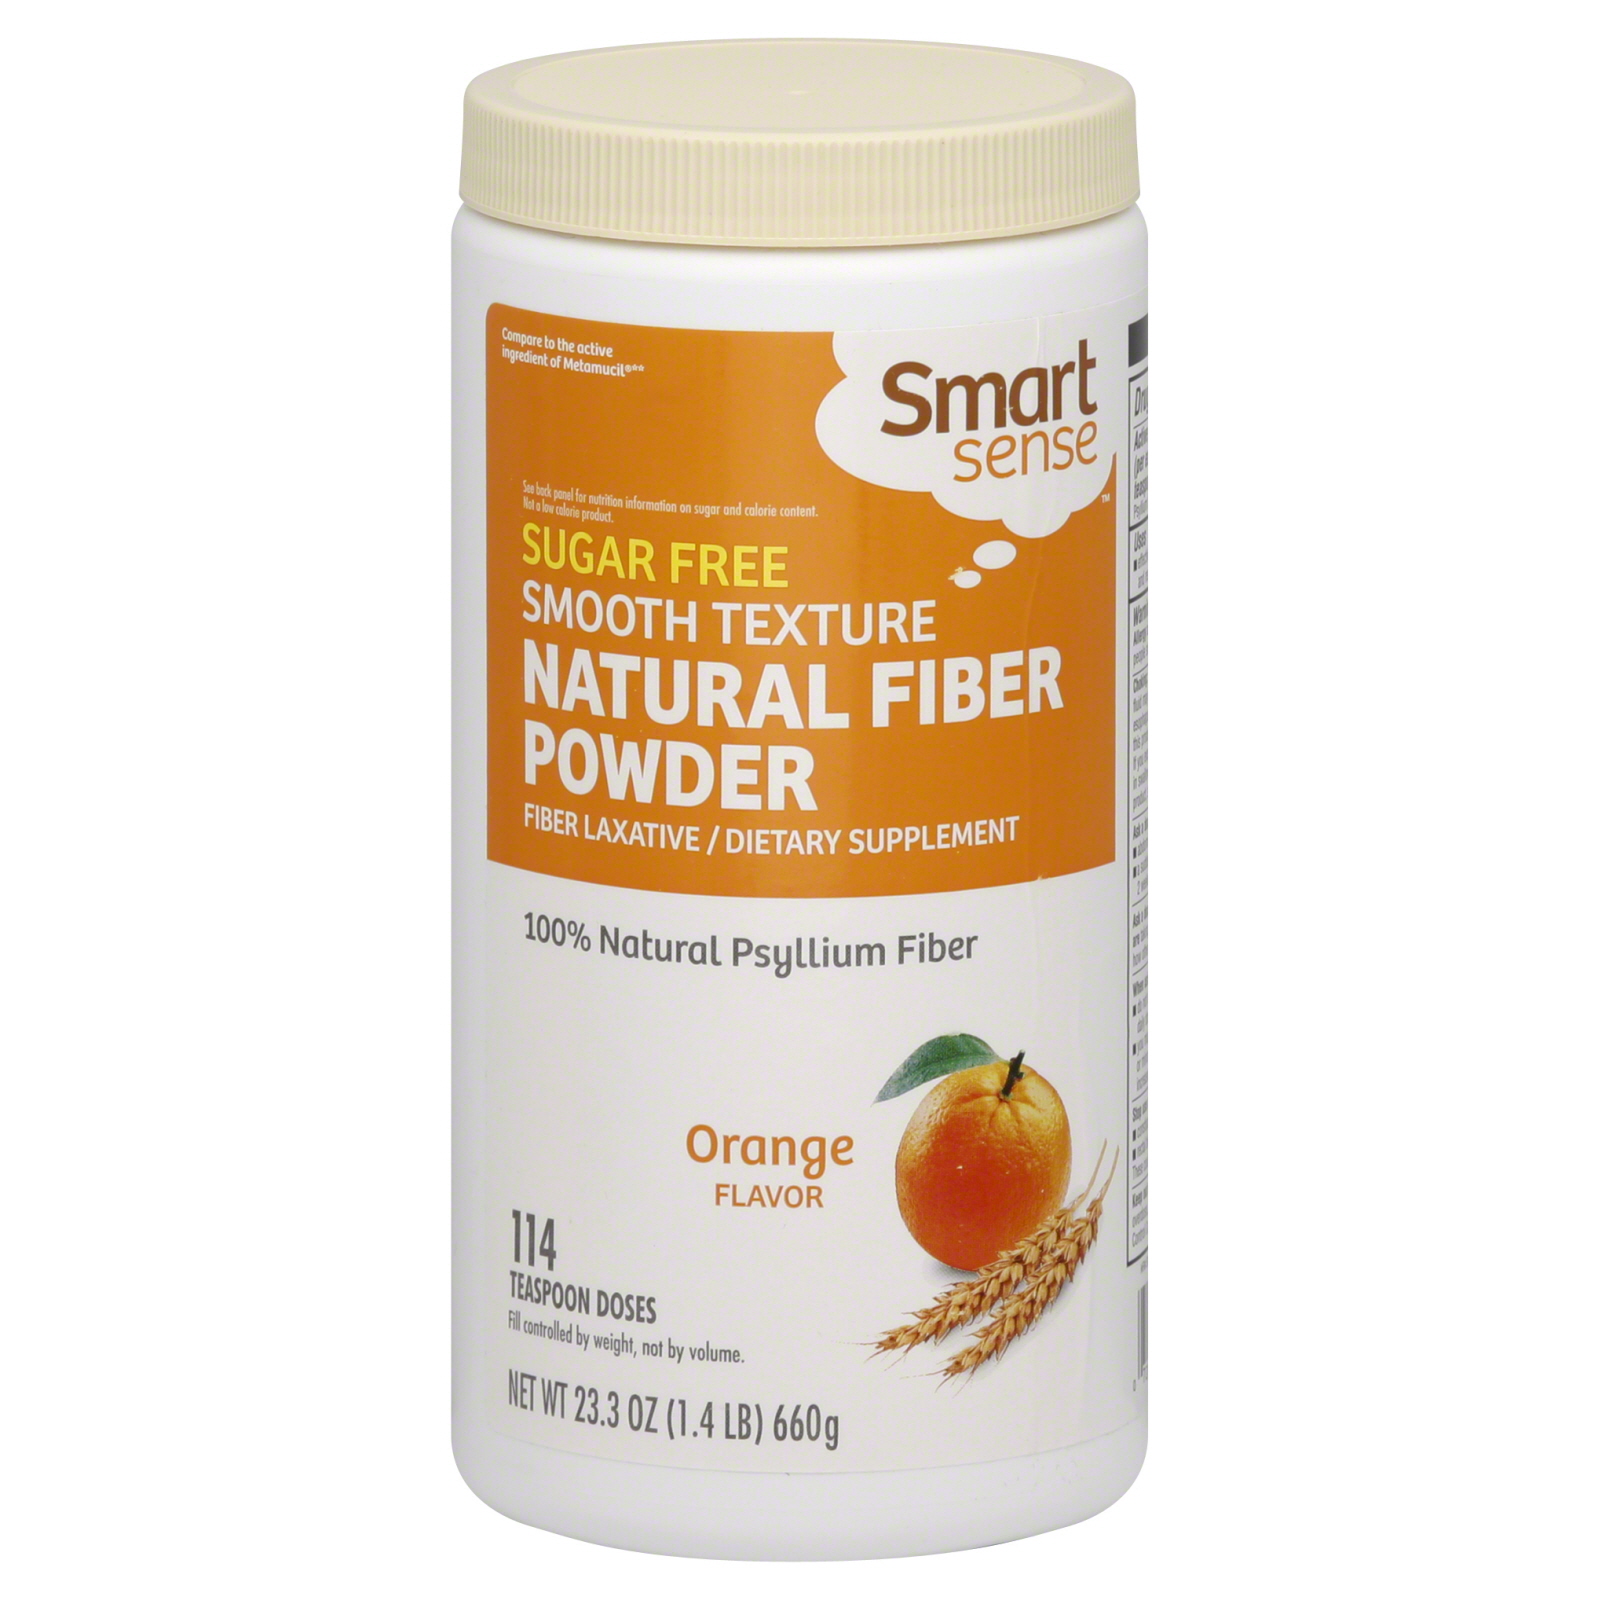 Smart Sense Natural Fiber Powder, Orange Flavor 23.3 oz (1.4 lb) 660 g